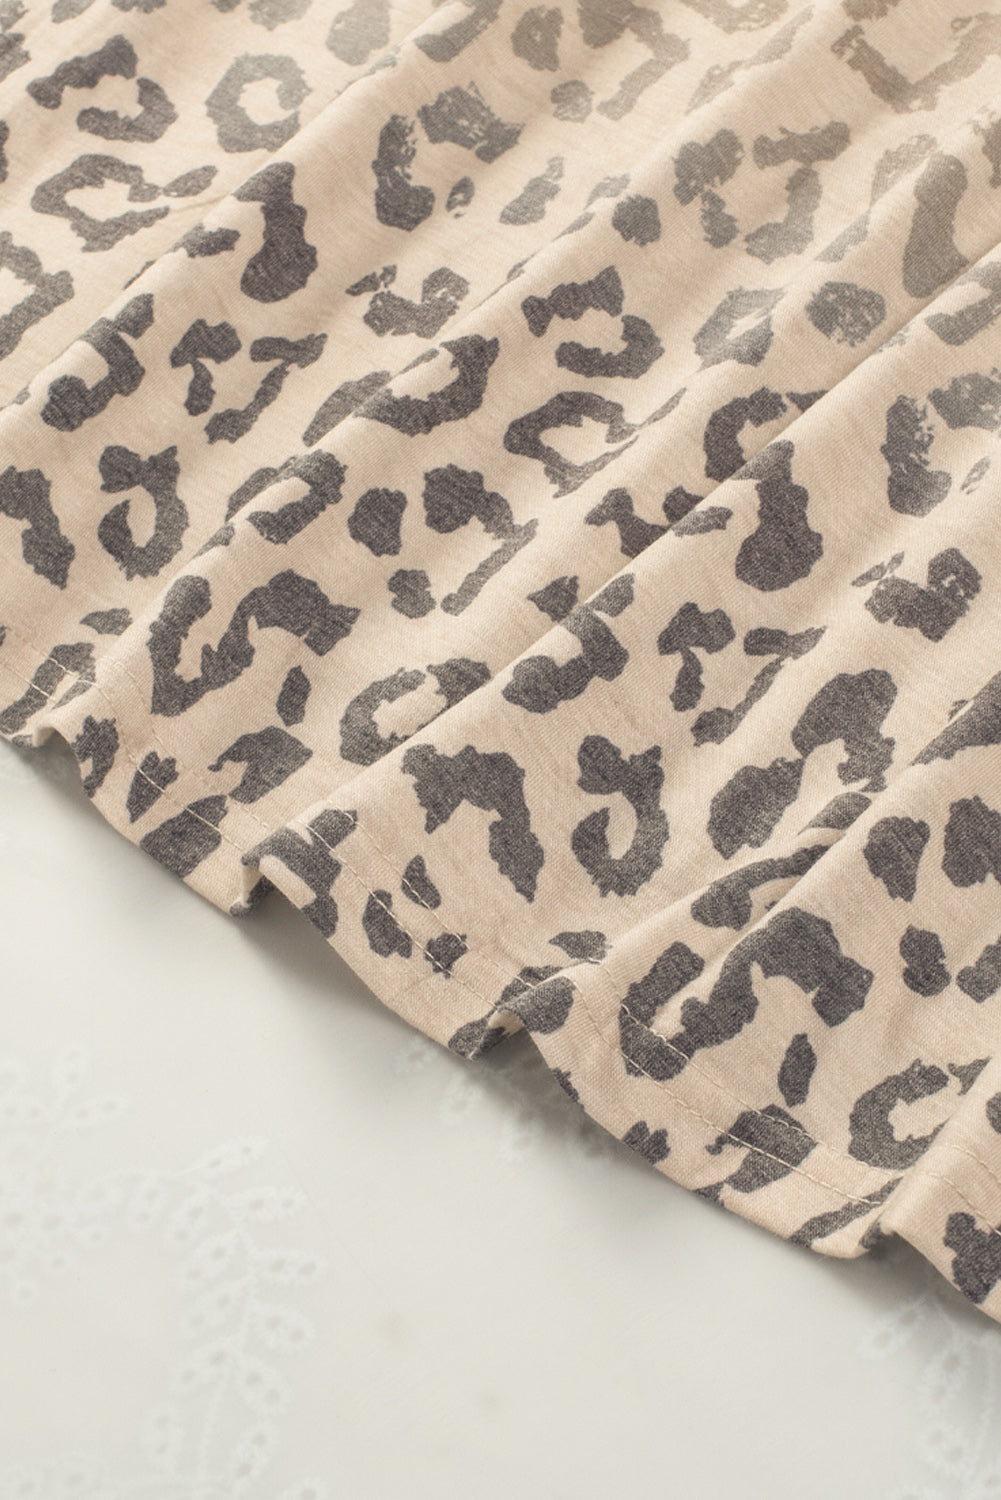 Majica s leopard printom boje marelice